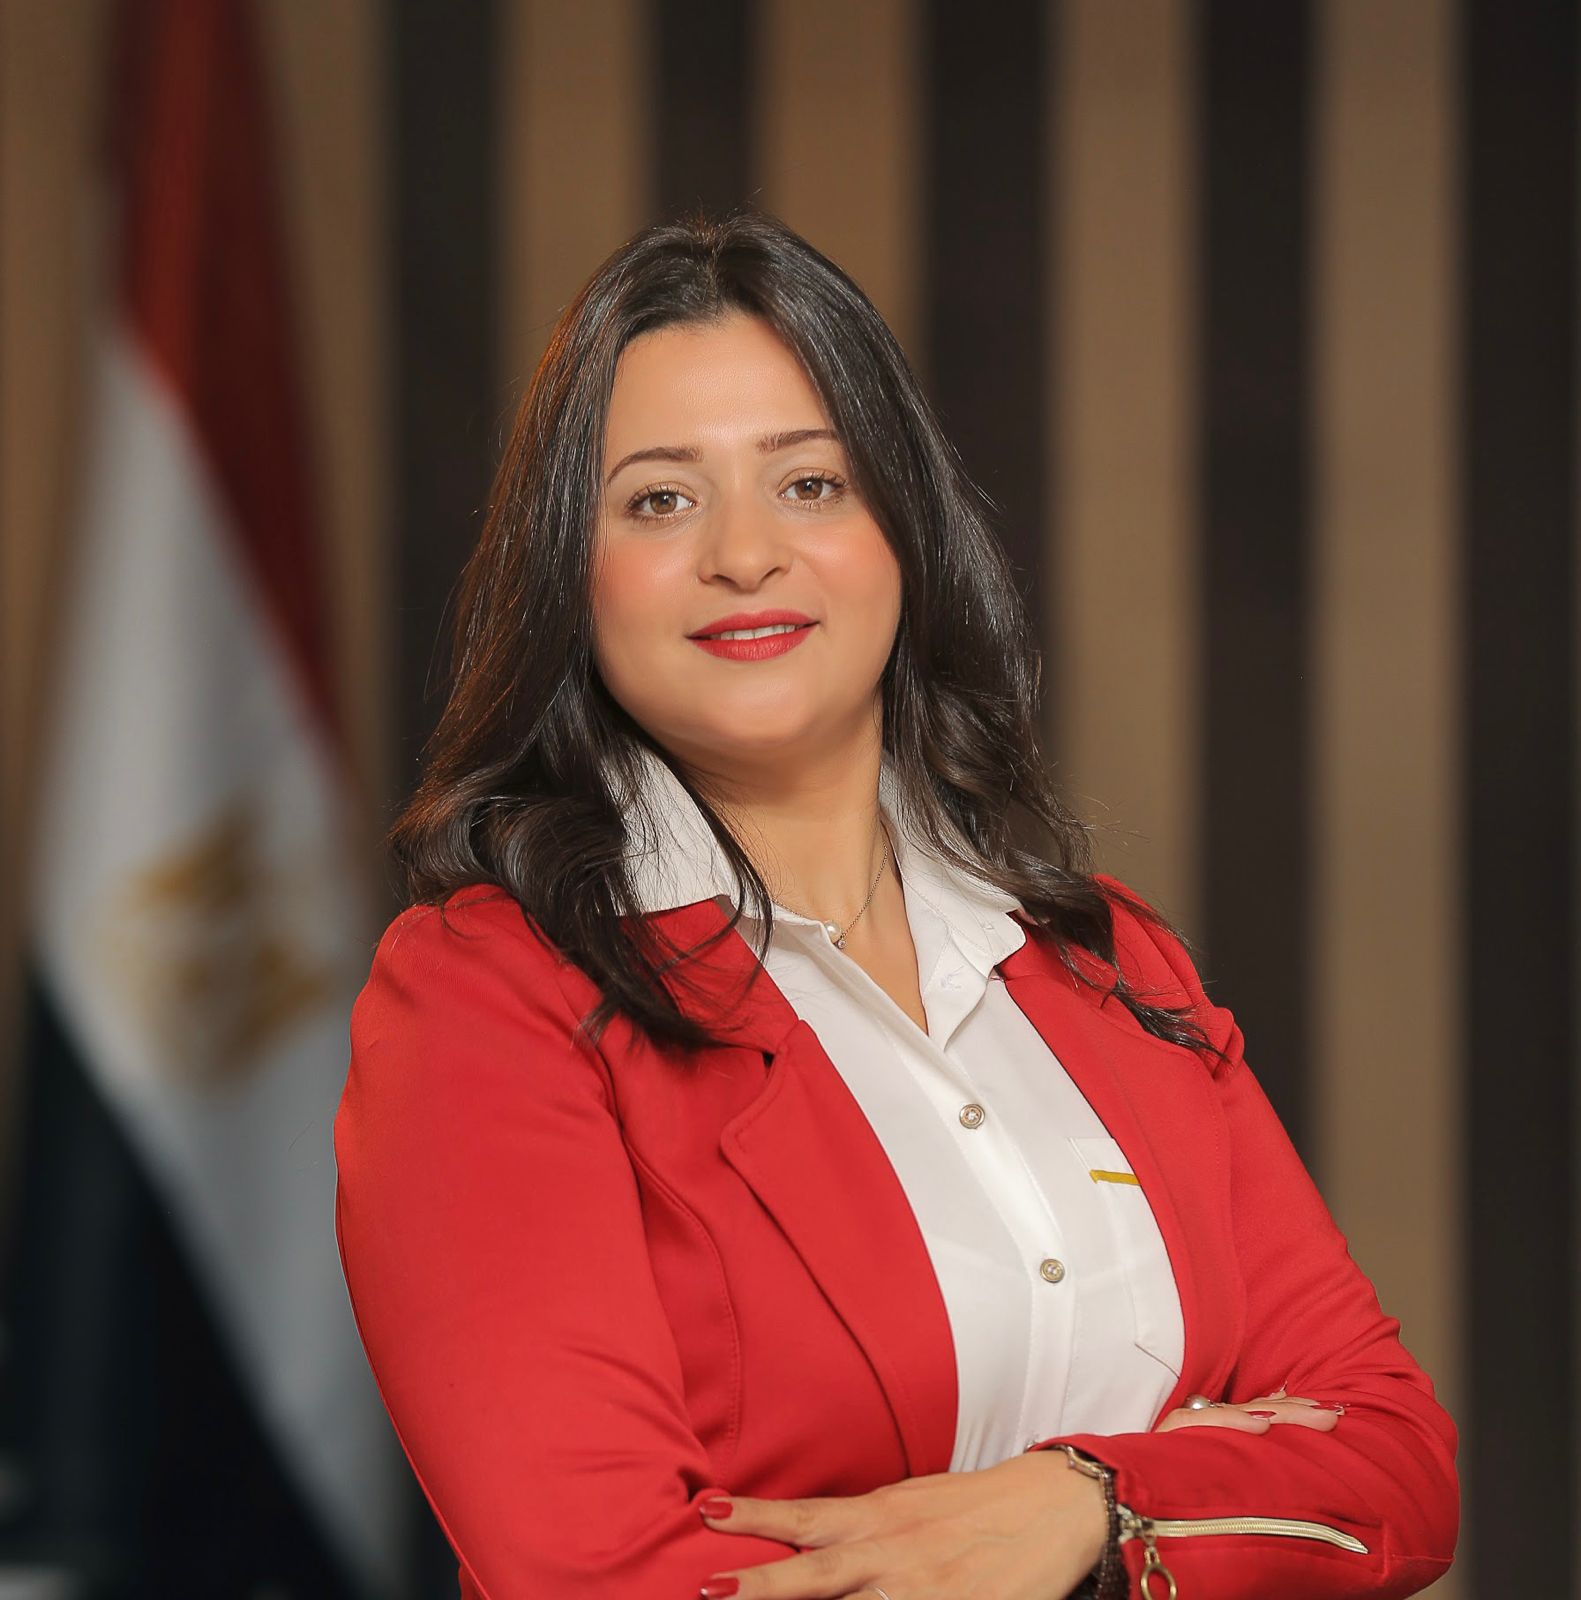 شيماء عليبة تشارك في جلسة مجلس الوزراء لمناقشة وثيقة “ملكية الدولة”  بالصناعات الهندسية - صناع مصر